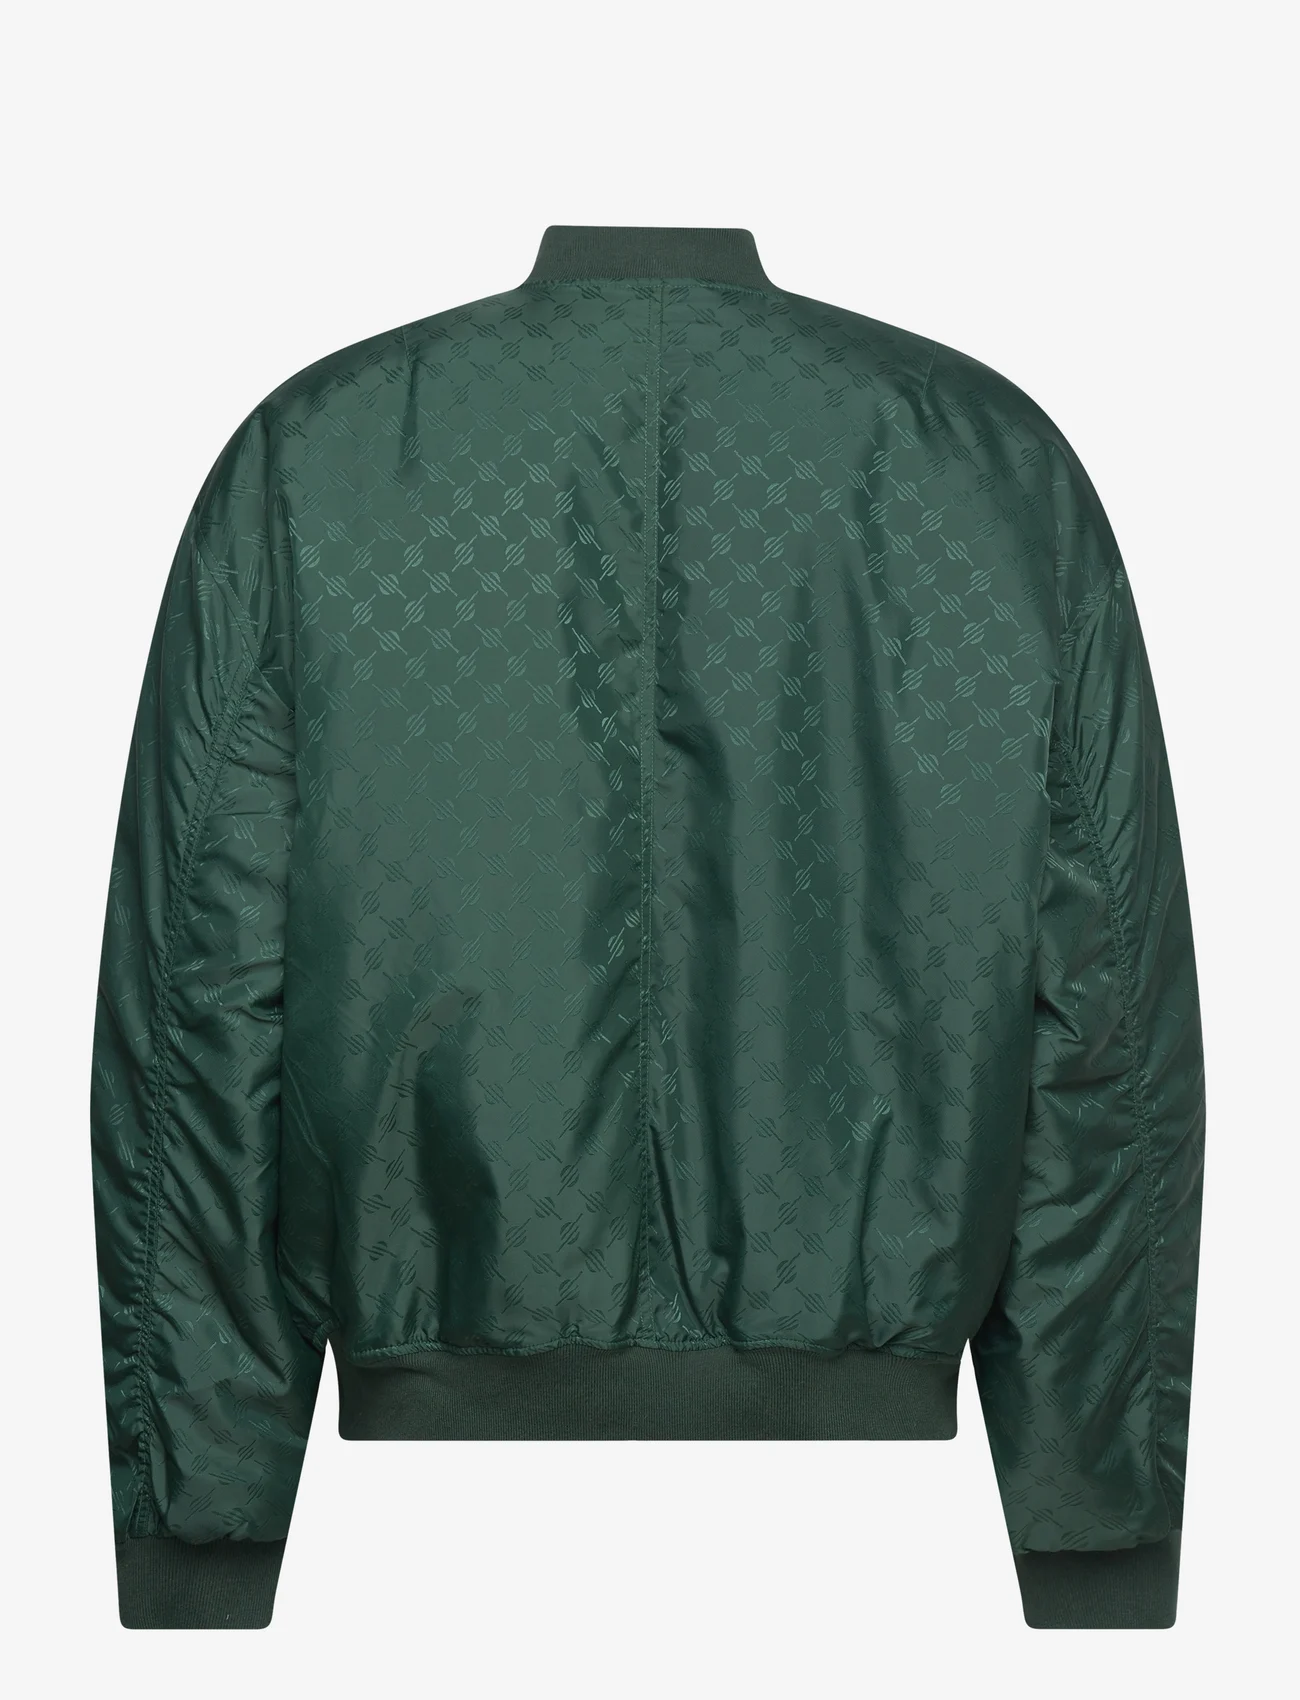 Daily Paper - ronack jacket - forårsjakker - pine green - 1